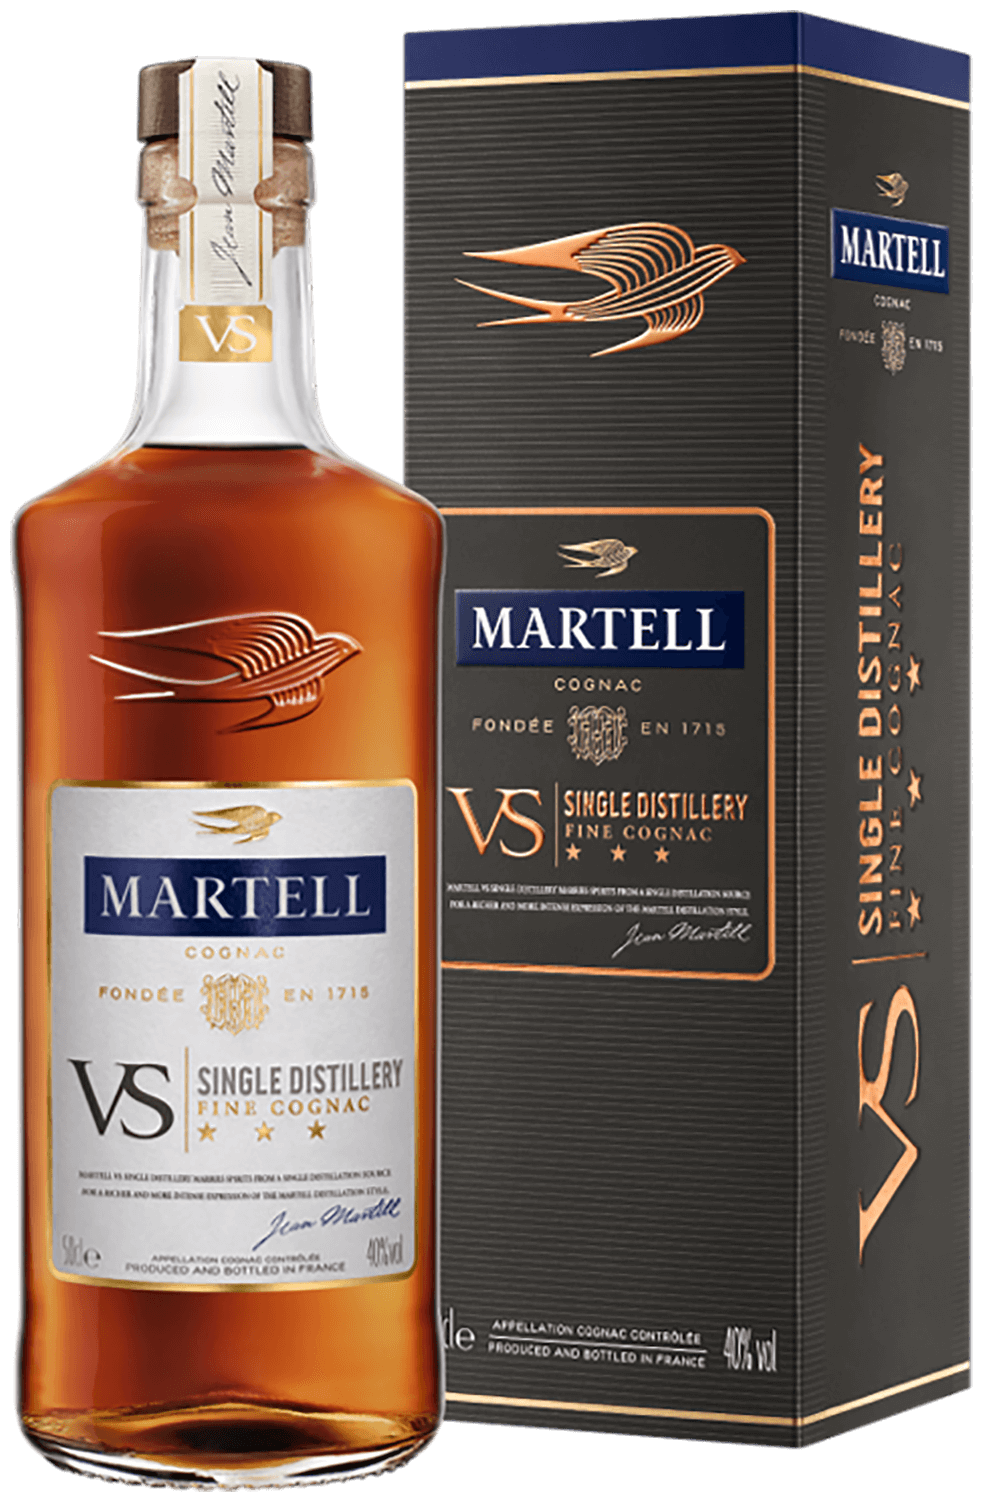 Martell VS Single Distillery (gift box)